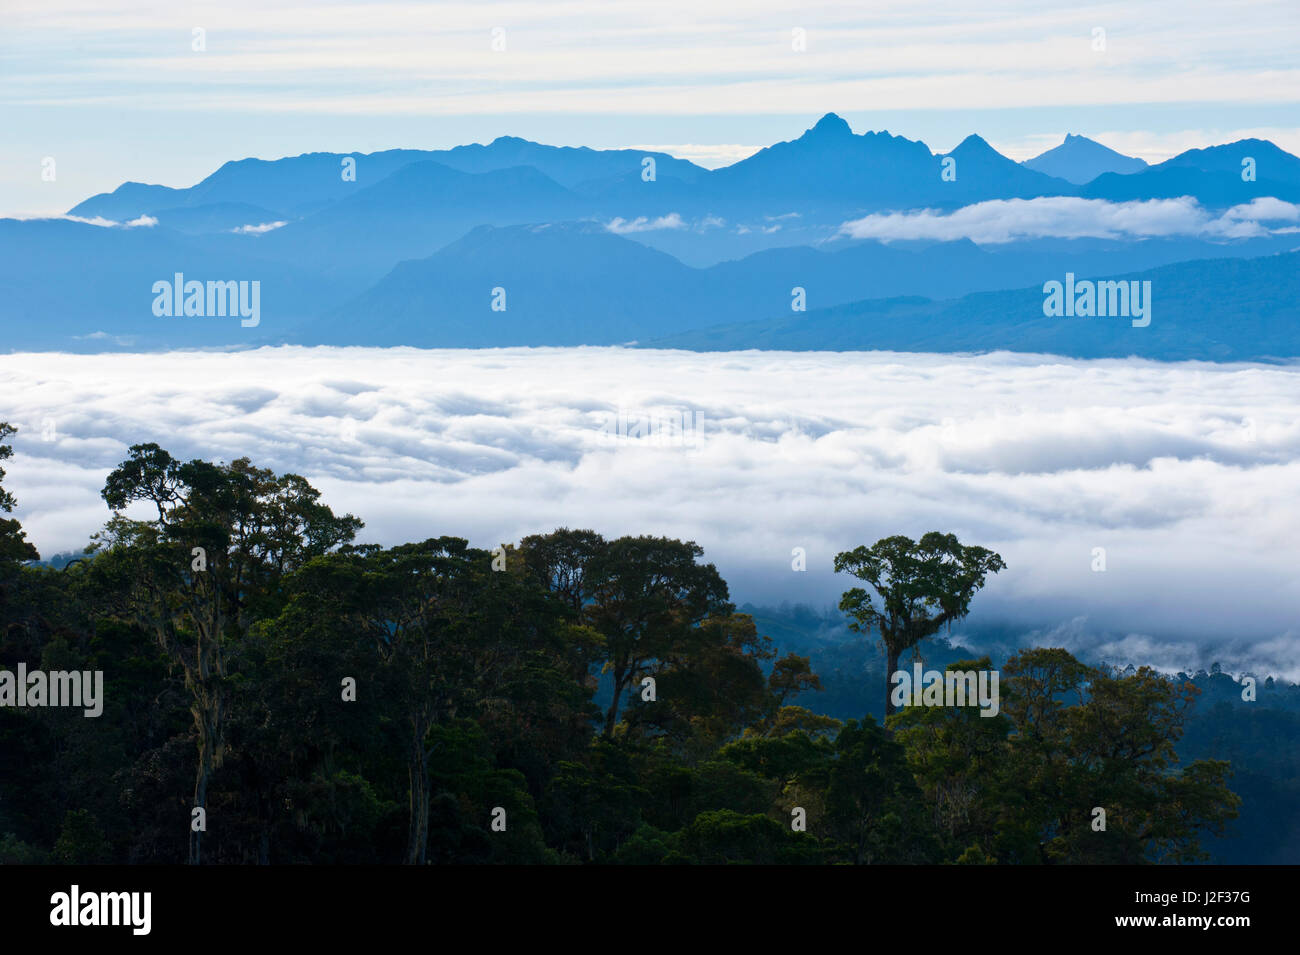 The mountains around Mount Hagen, Papua New Guinea Stock Photo